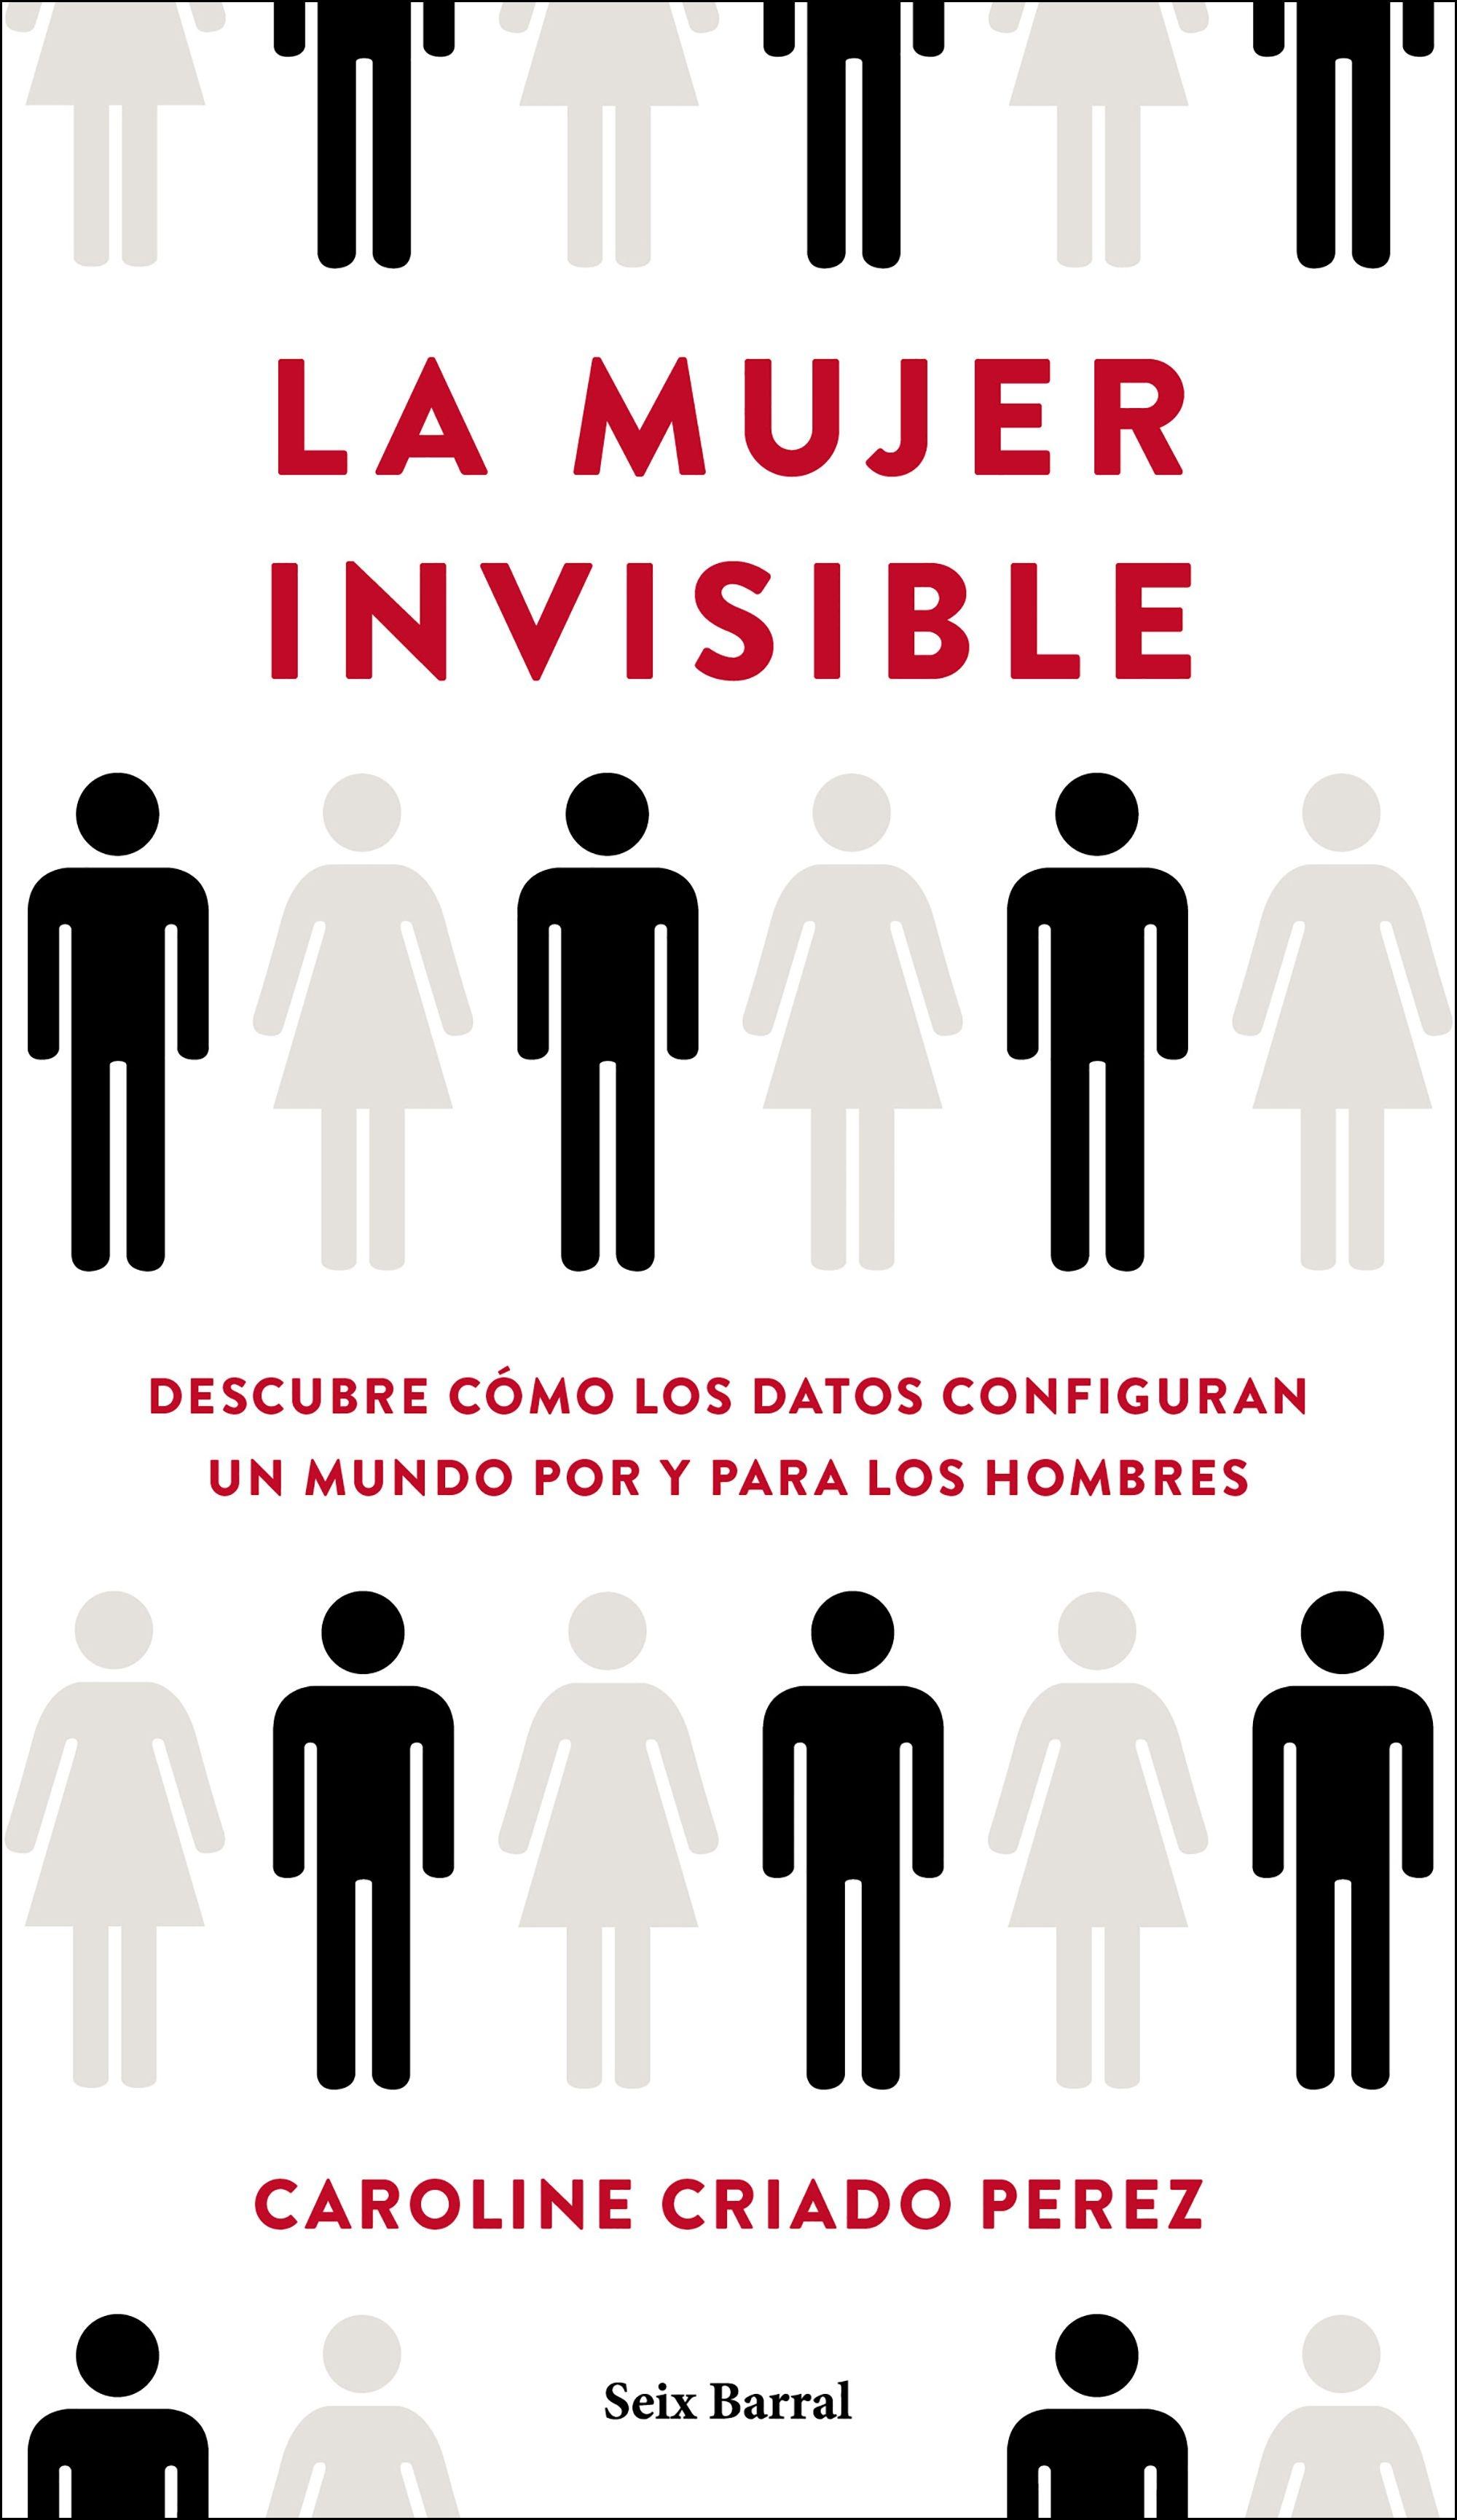 La Mujer Invisible "Descubre Cómo los Datos Configuran un Mundo Hecho por y para los Hombres"